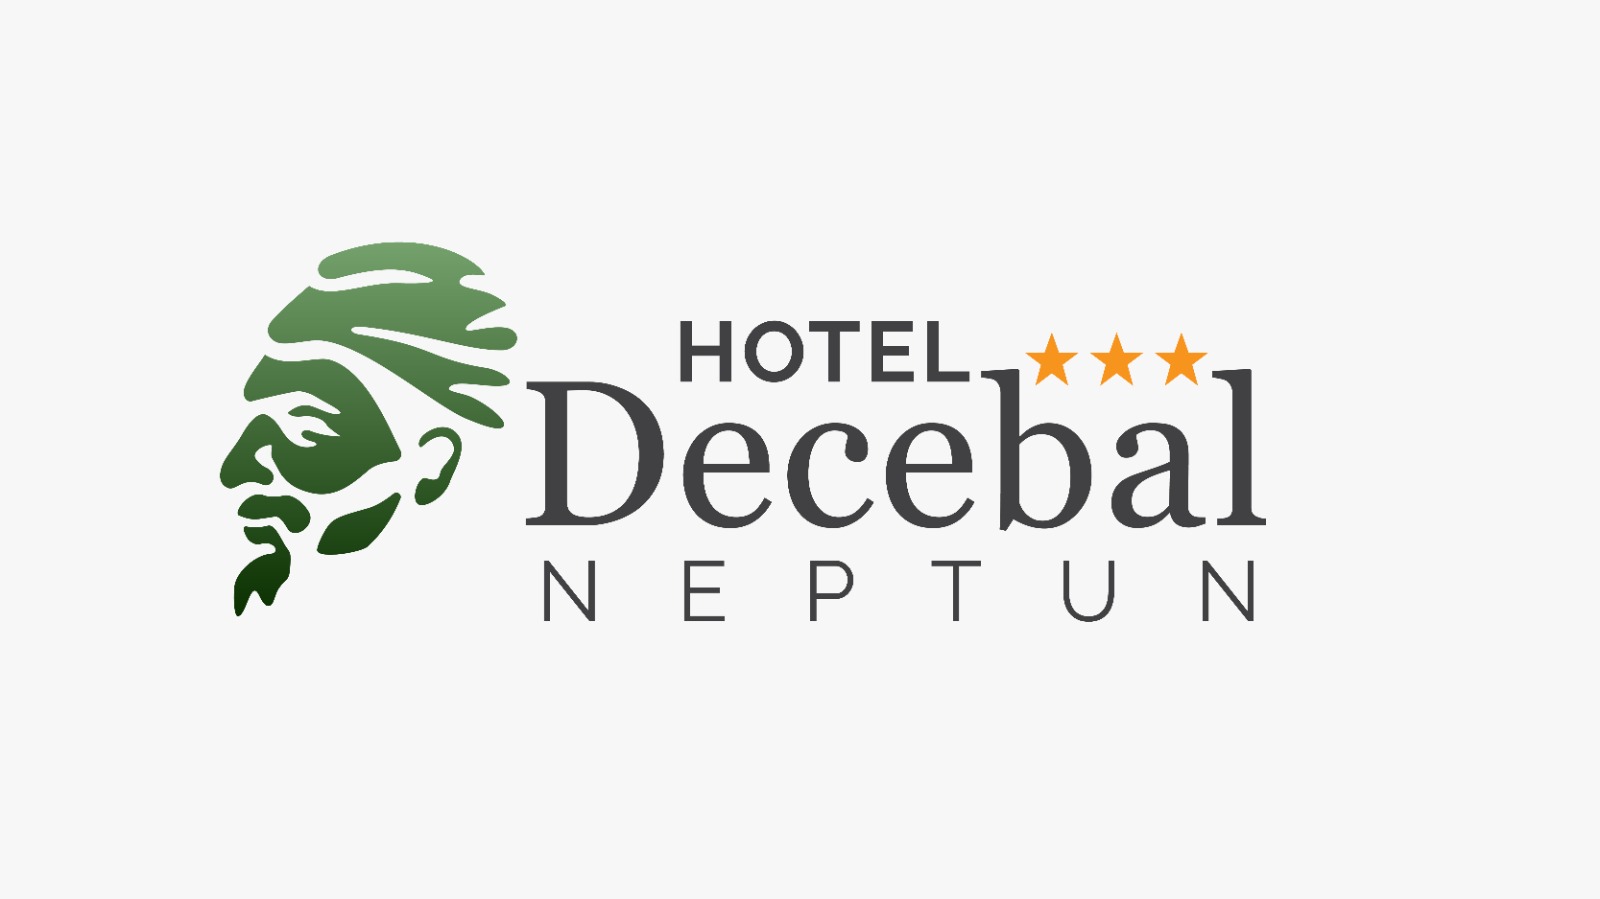 Hotel Decebal Neptun